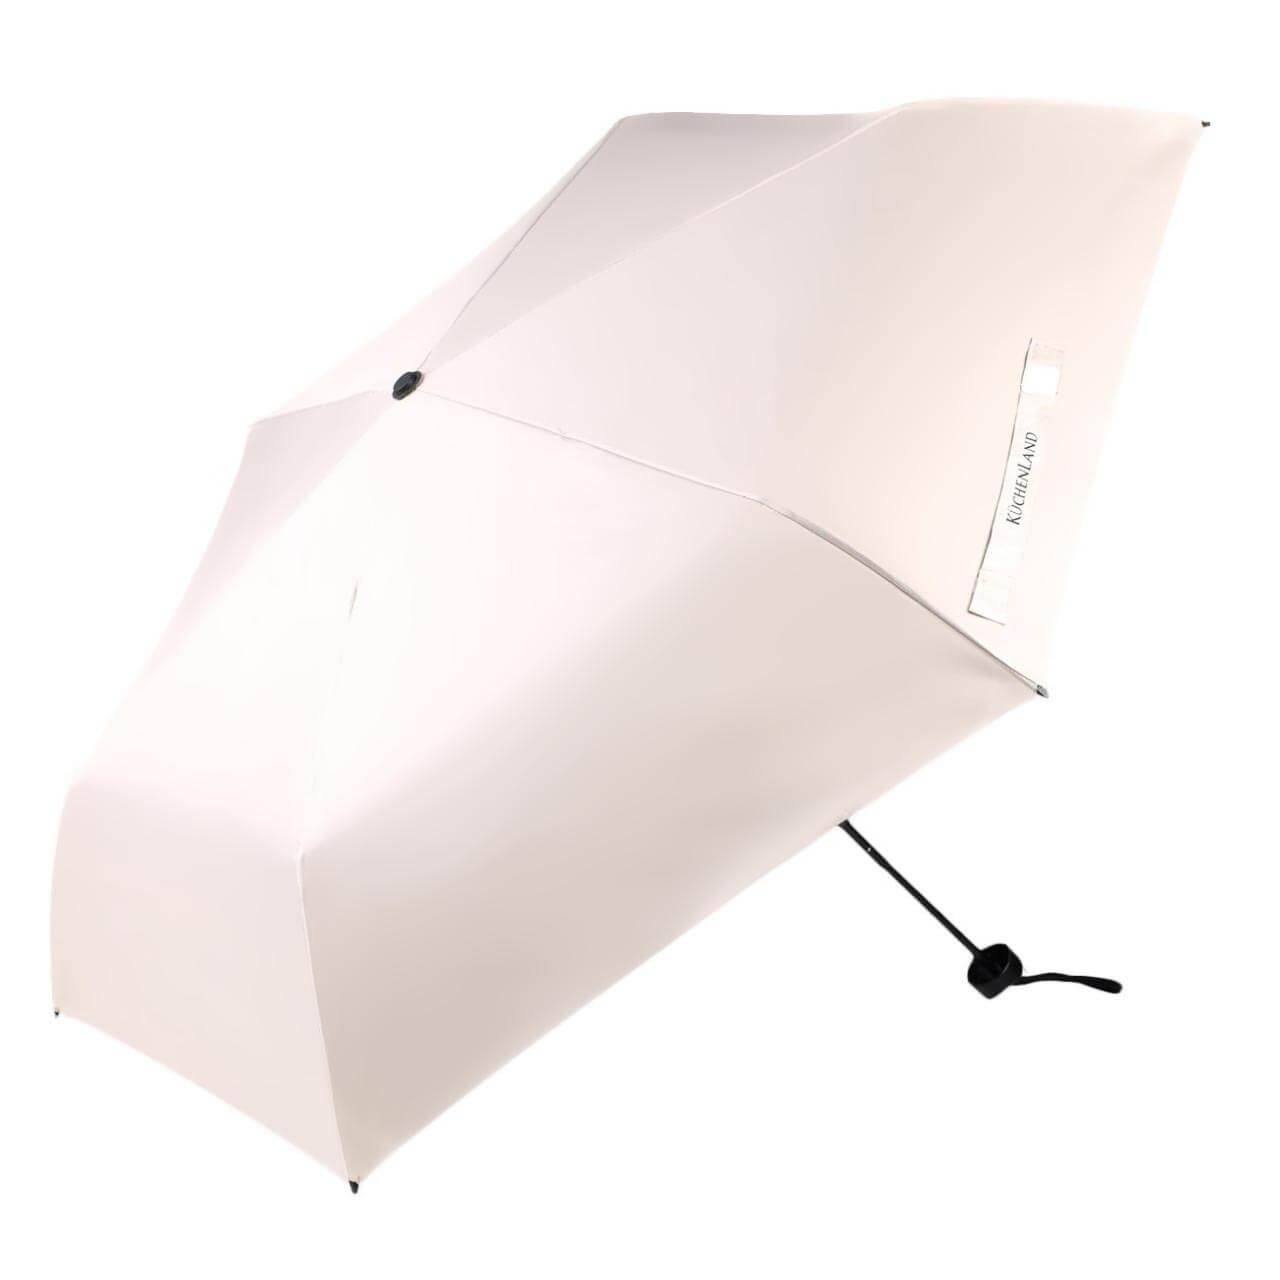 Зонт, 52 см, складной, двусторонний, эпонж, бежево-черный, Rainy day